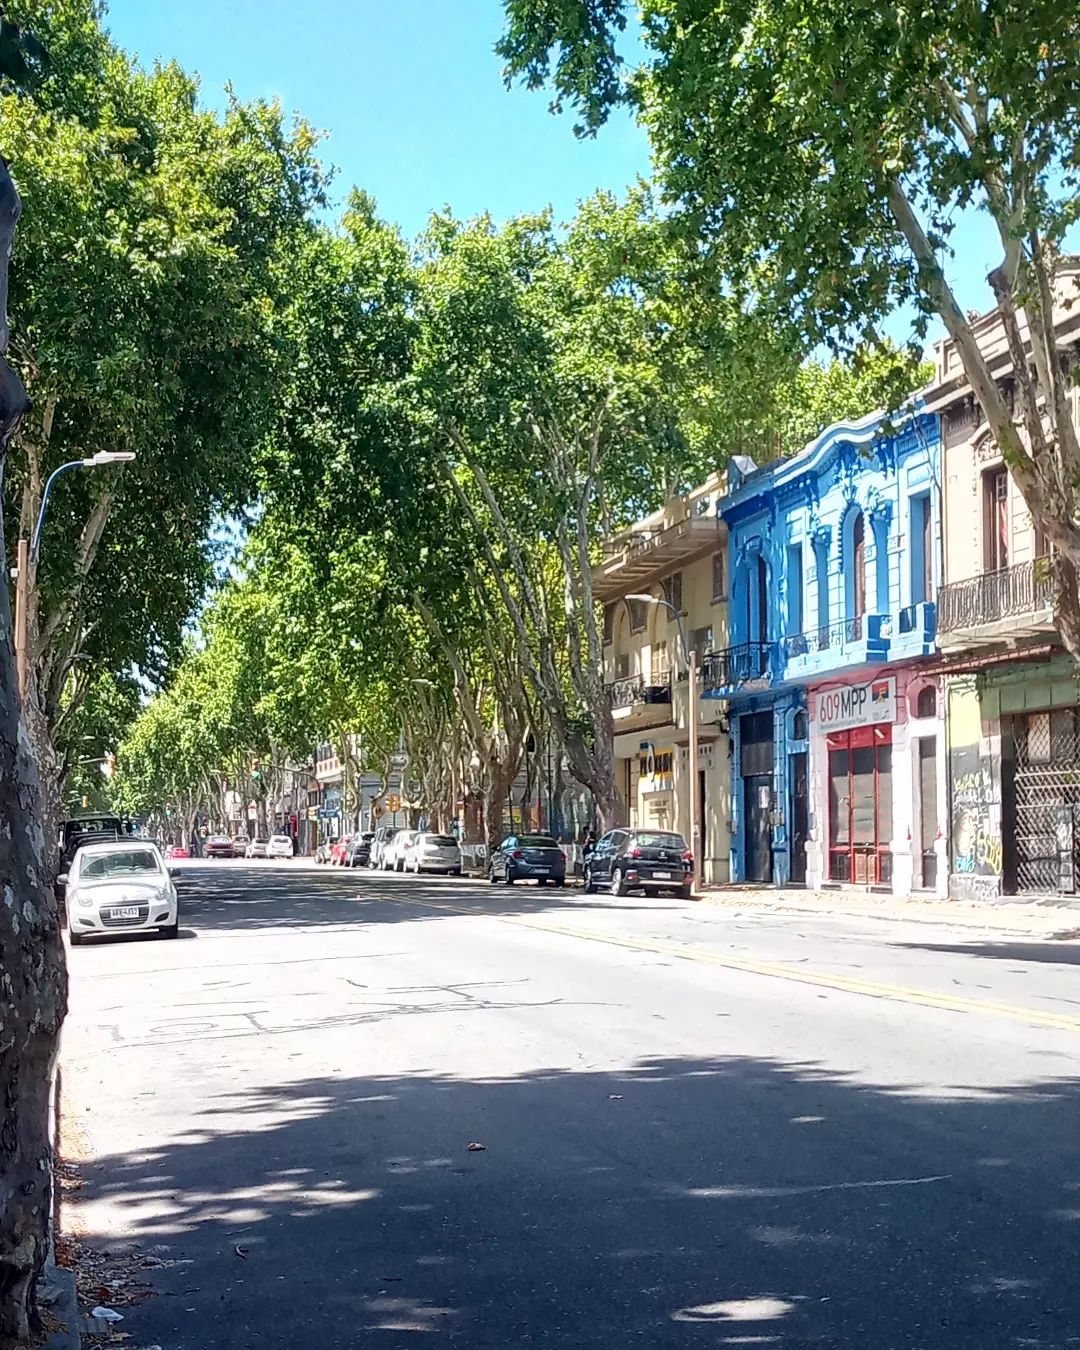 Eine Straßenansicht aus Montevideo. #Montevideo #Uruguay #Reisen #Travel #Unterwegs #Strassenansicht #Bäume #Häuser #Strasse